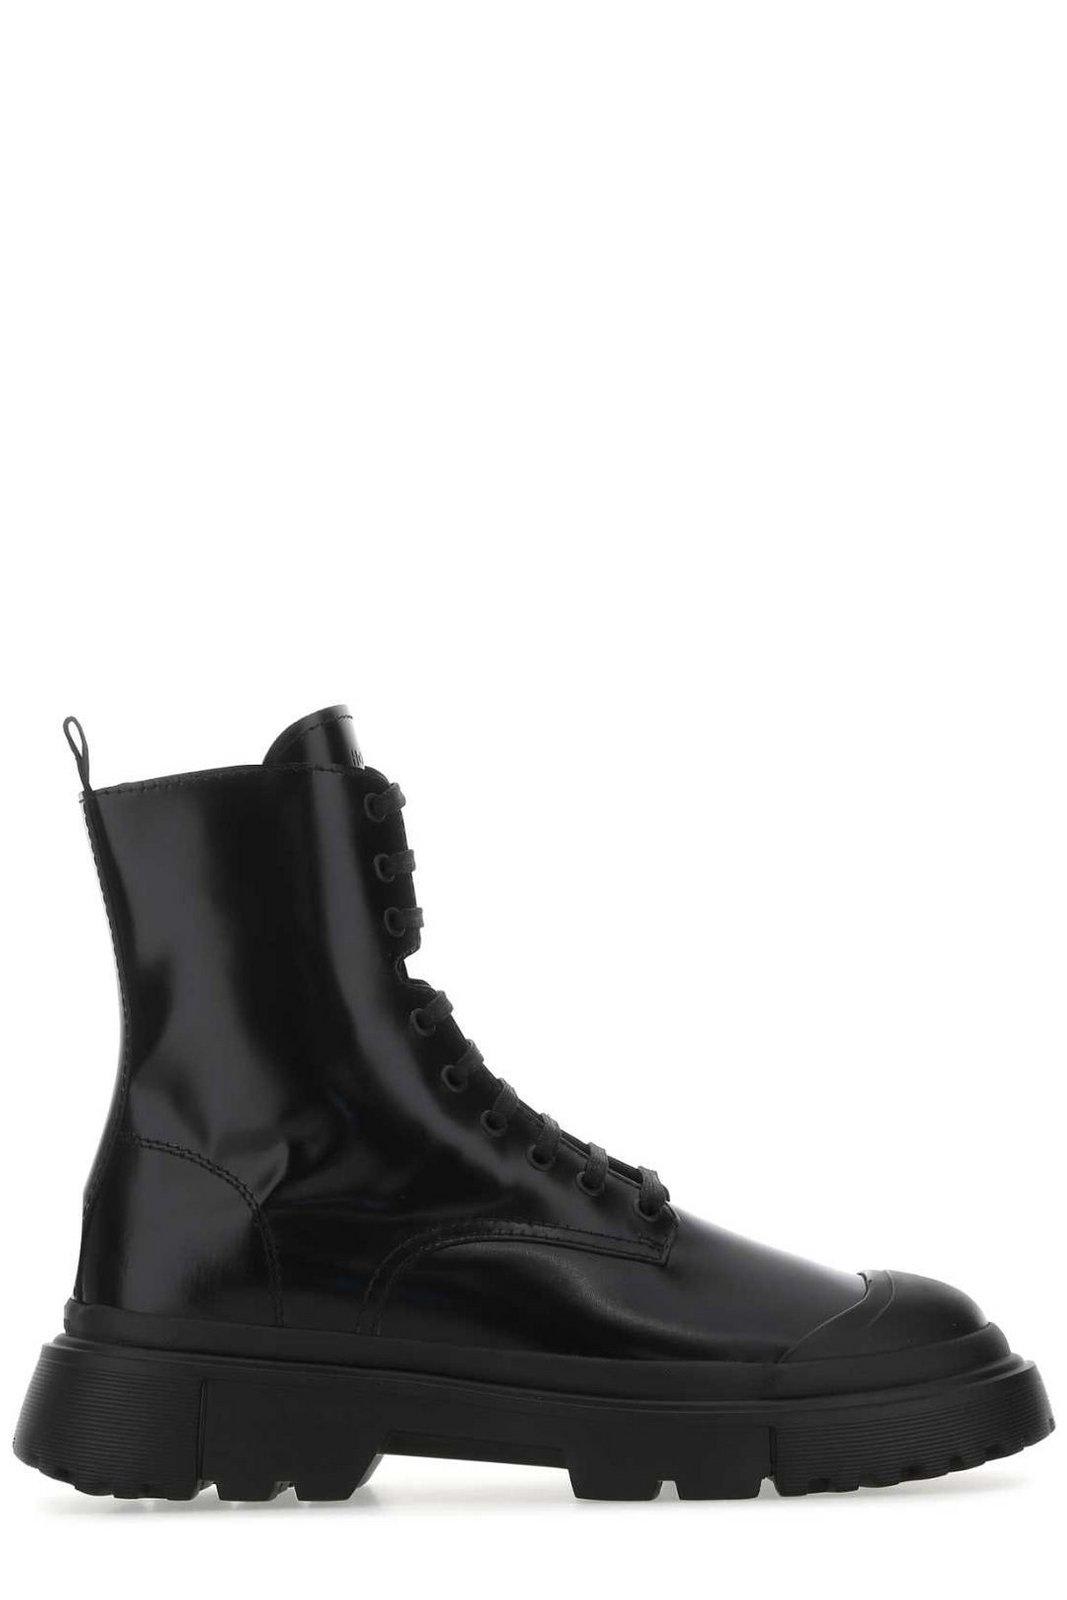 Hogan H619 Combat Lace-up Boots